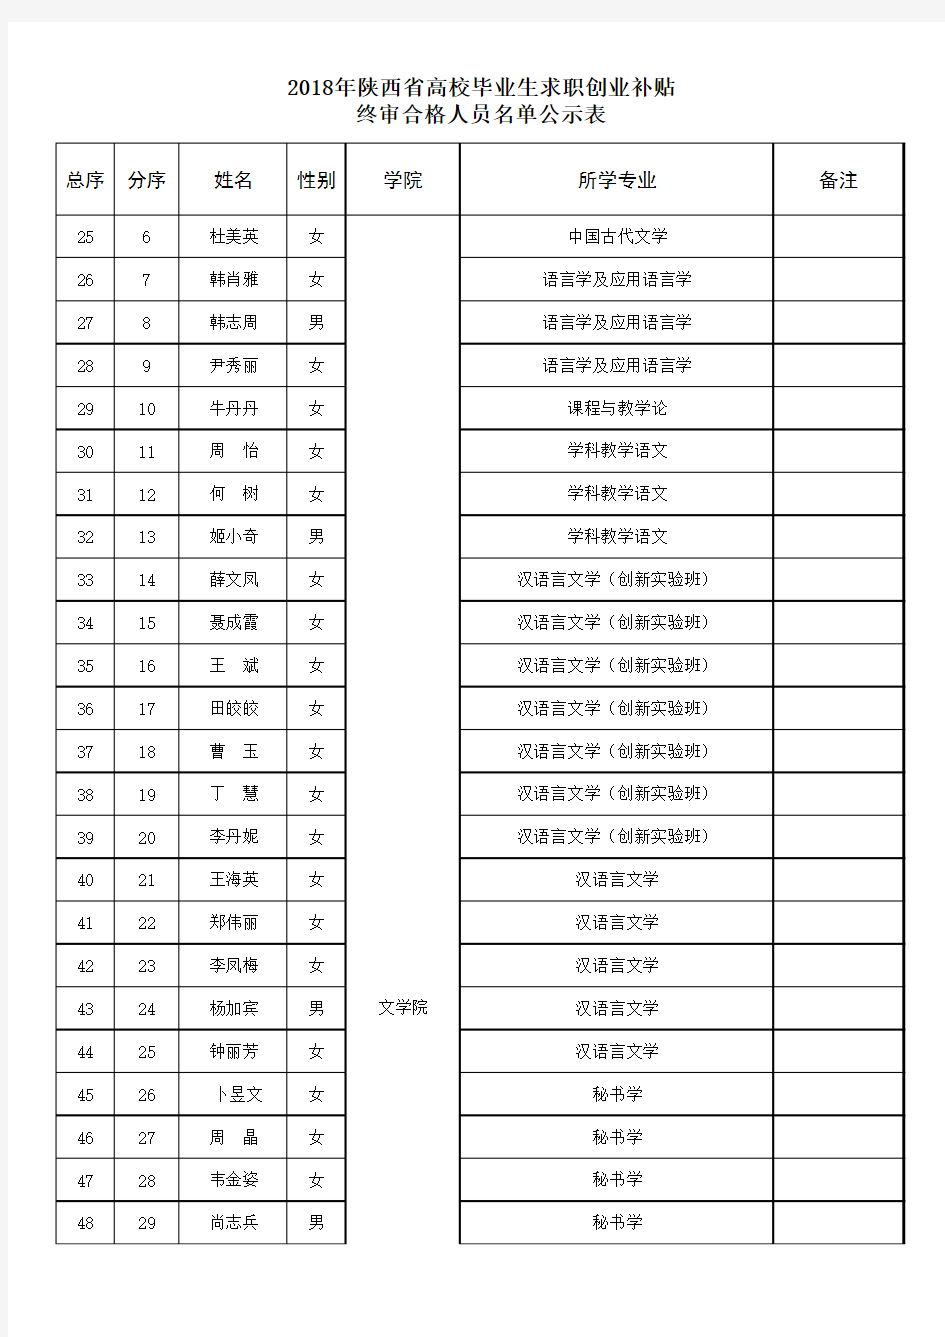 2018年陕西省高校毕业生求职创业补贴终审合格人员名单公